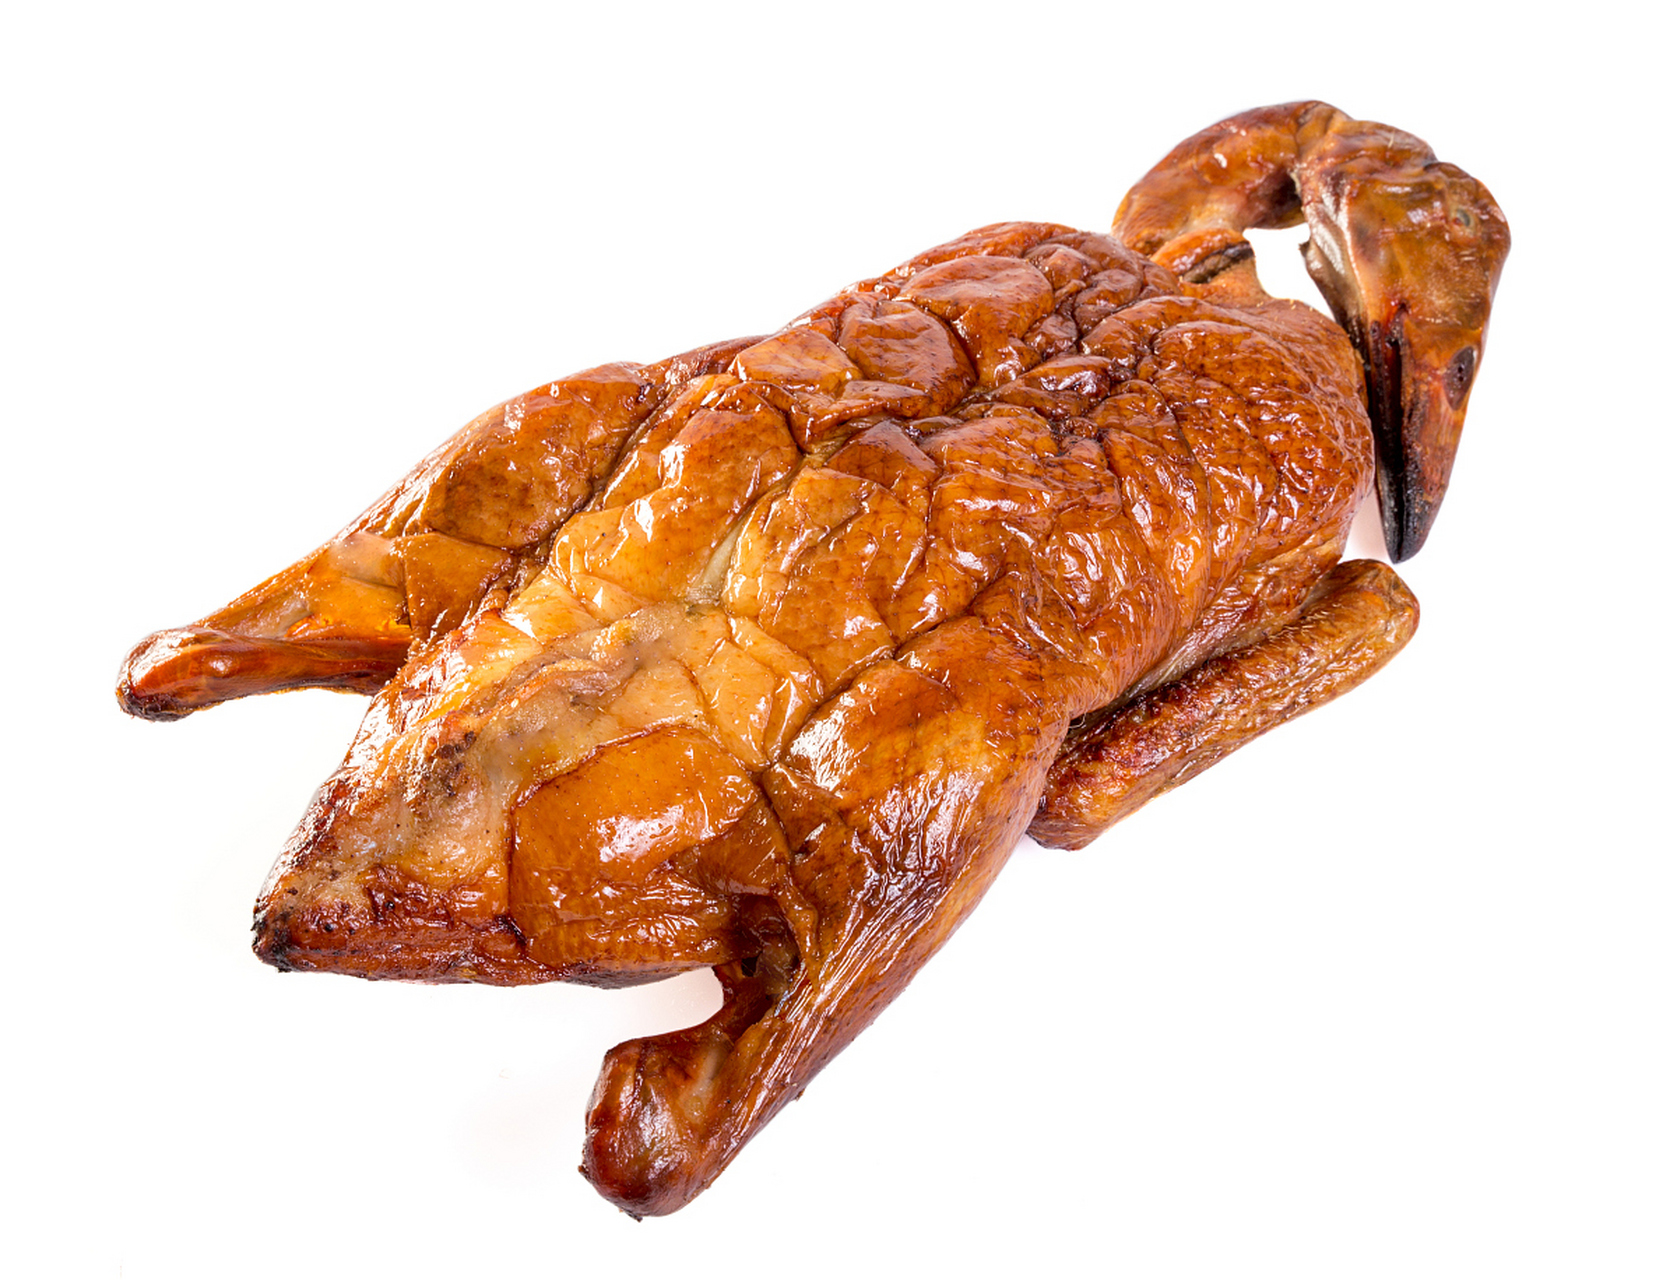 德州扒鸡是一道具有悠久历史的鲁菜,以独特的烹饪工艺和醇厚的五香味